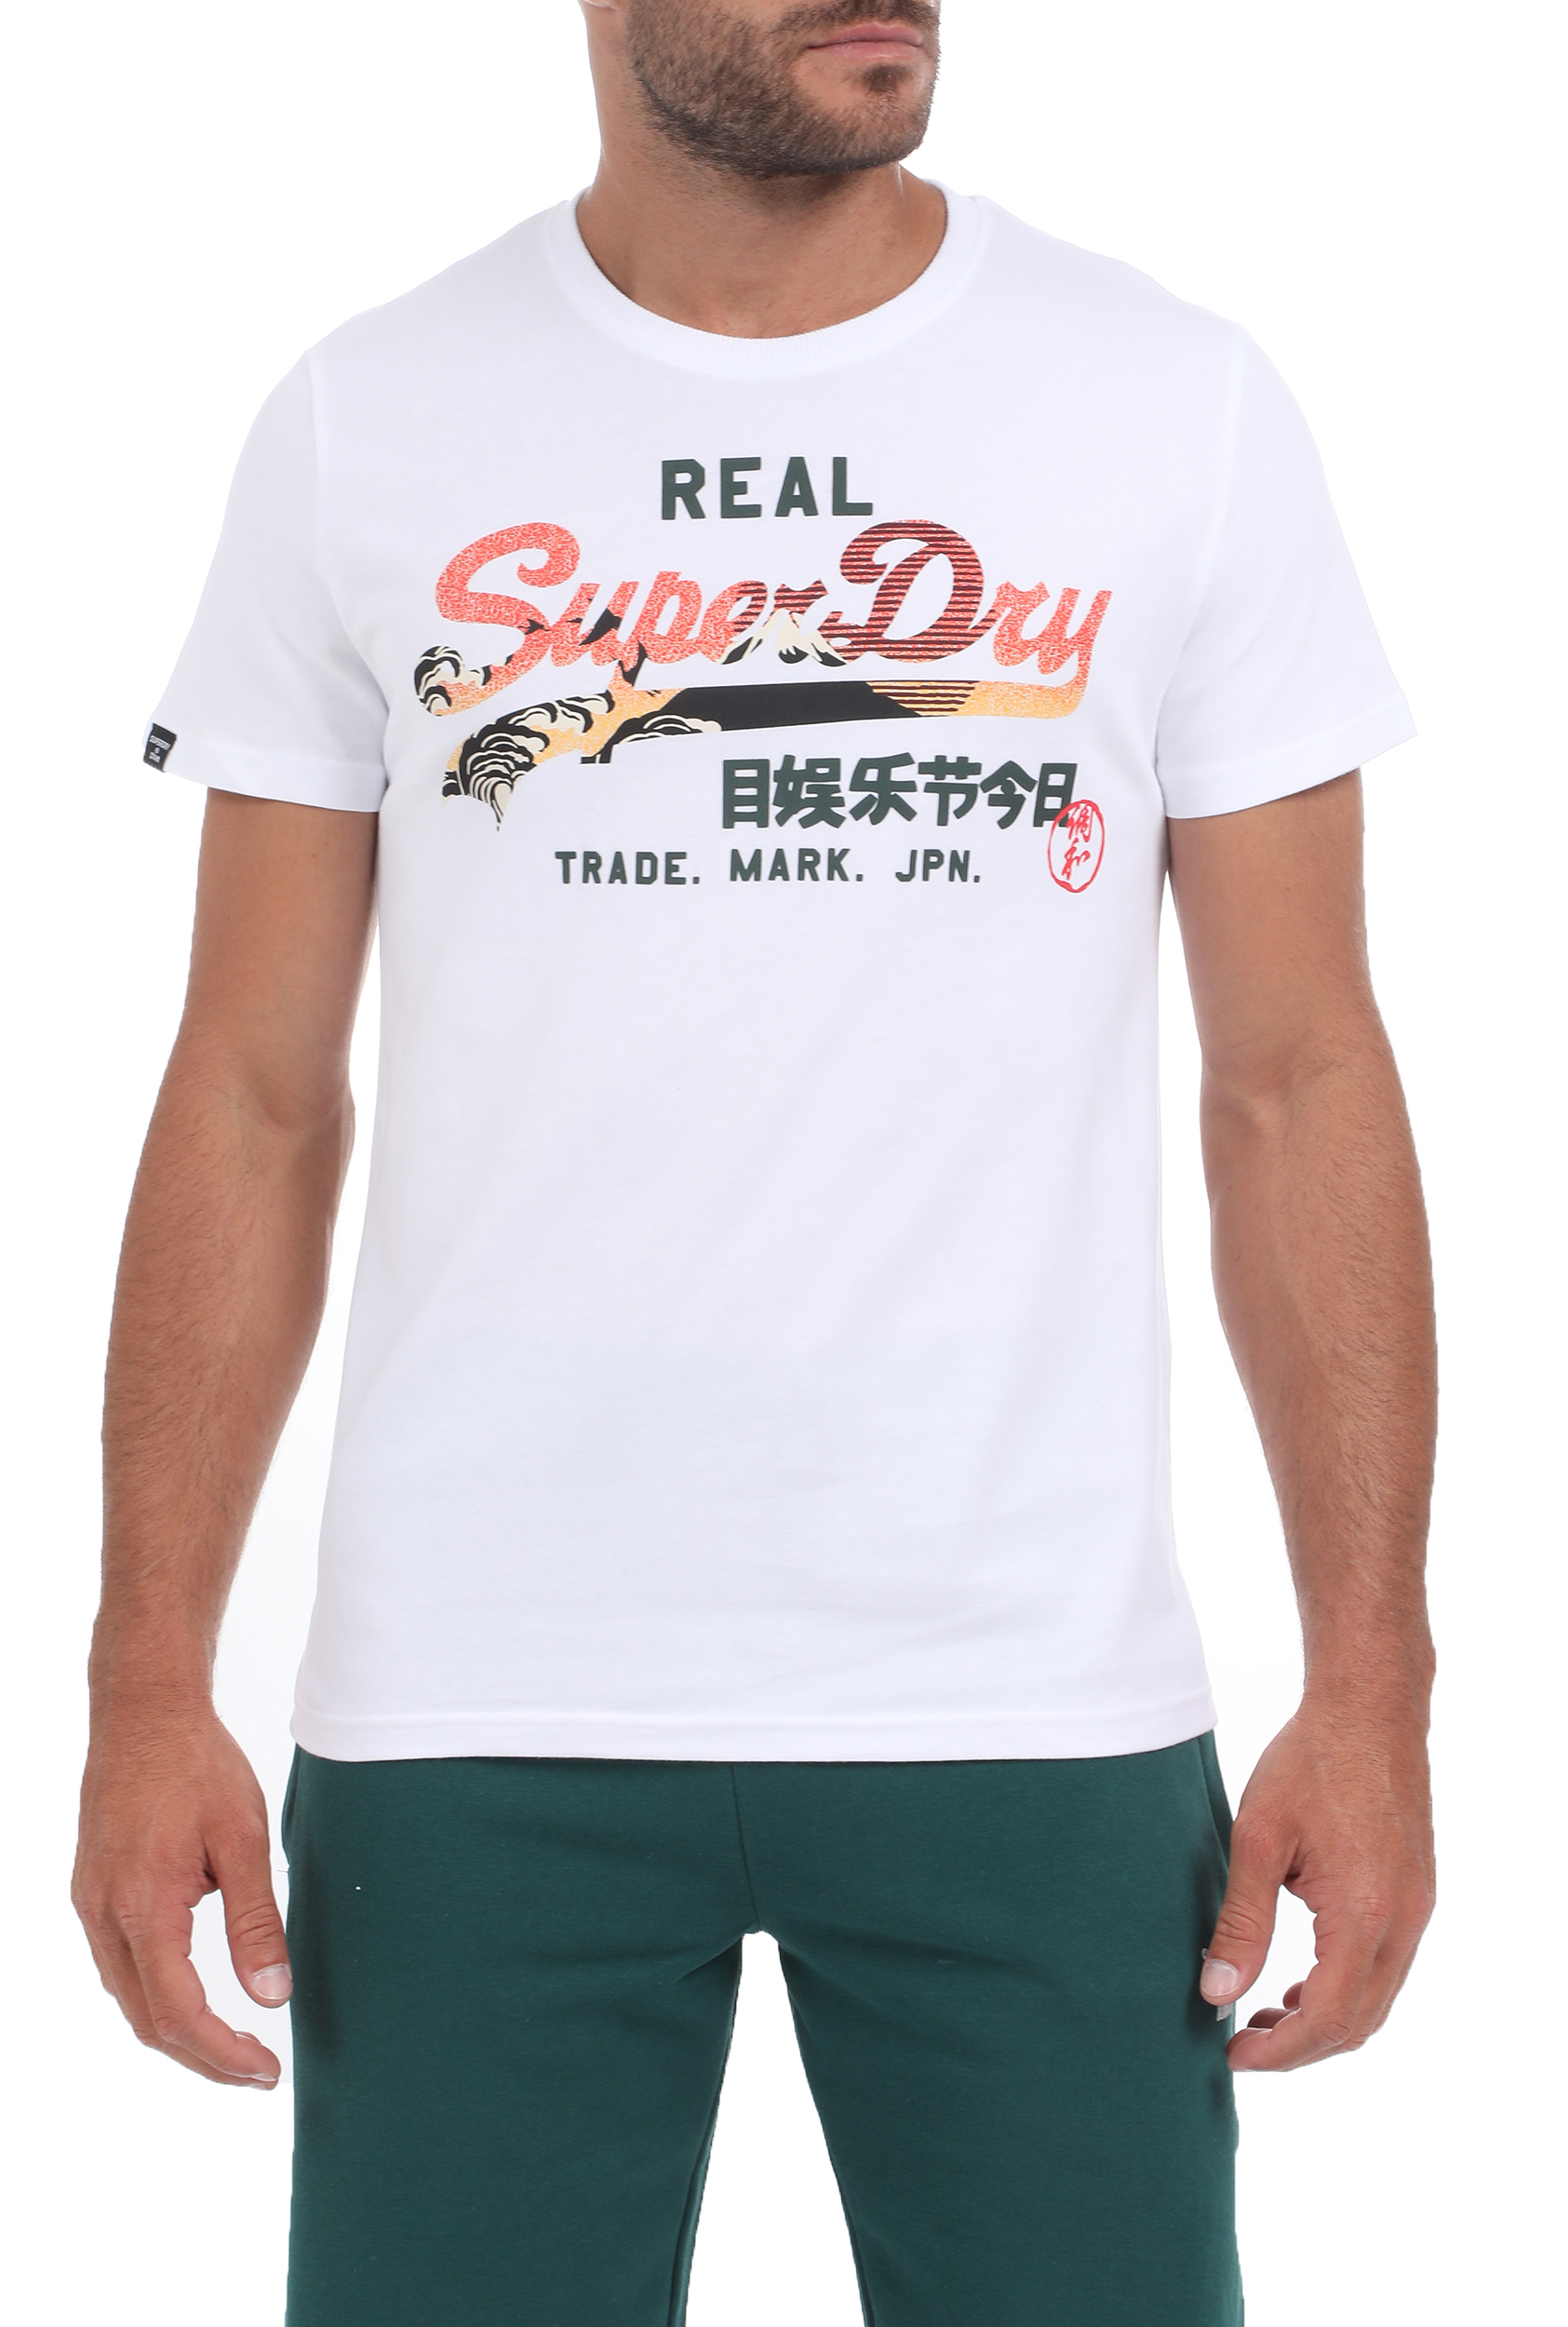 Ανδρικά/Ρούχα/Μπλούζες/Κοντομάνικες SUPERDRY - Ανδρική μπλούζα SUPERDRY VL ITAGO LW λευκή